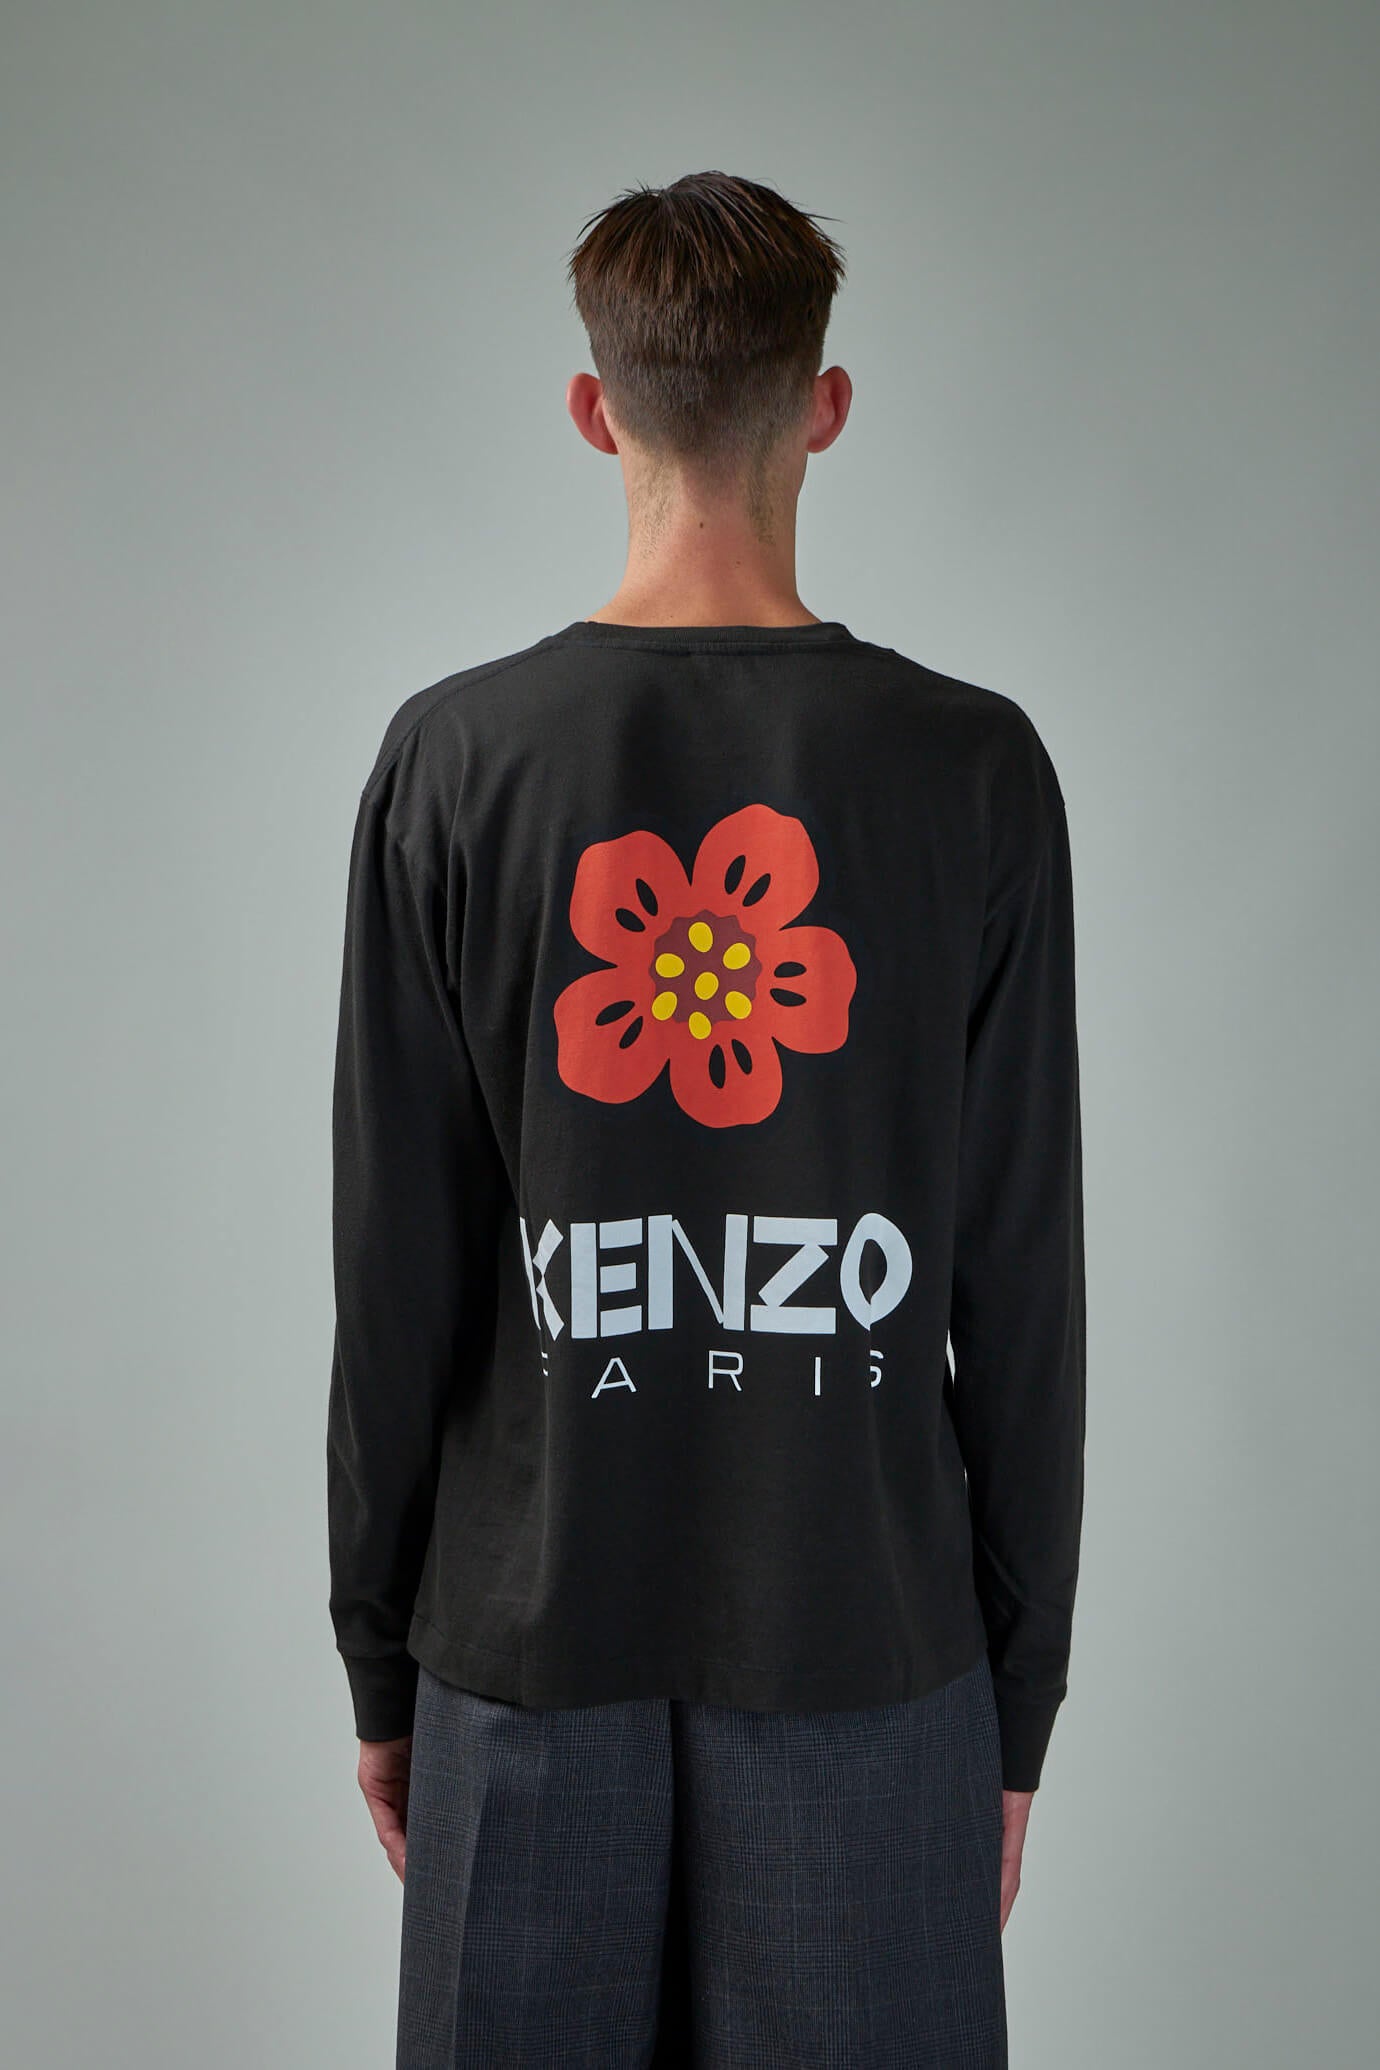 kenzo nigo logo